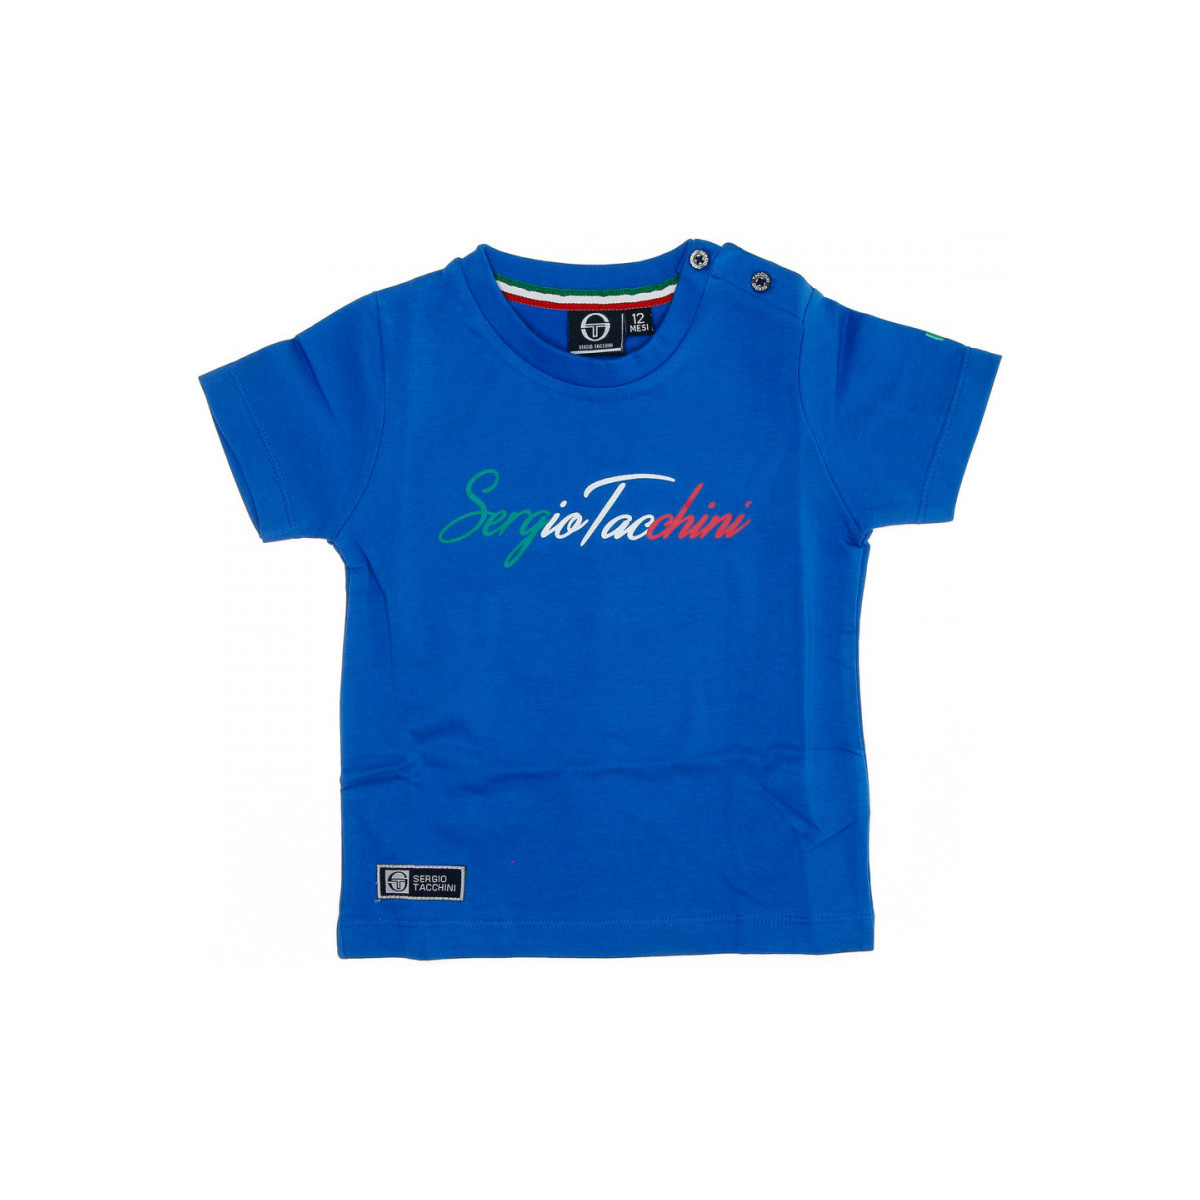 Vêtements Enfant x McDonald's Live From Utopia T-shirt 3076M0016 Bleu